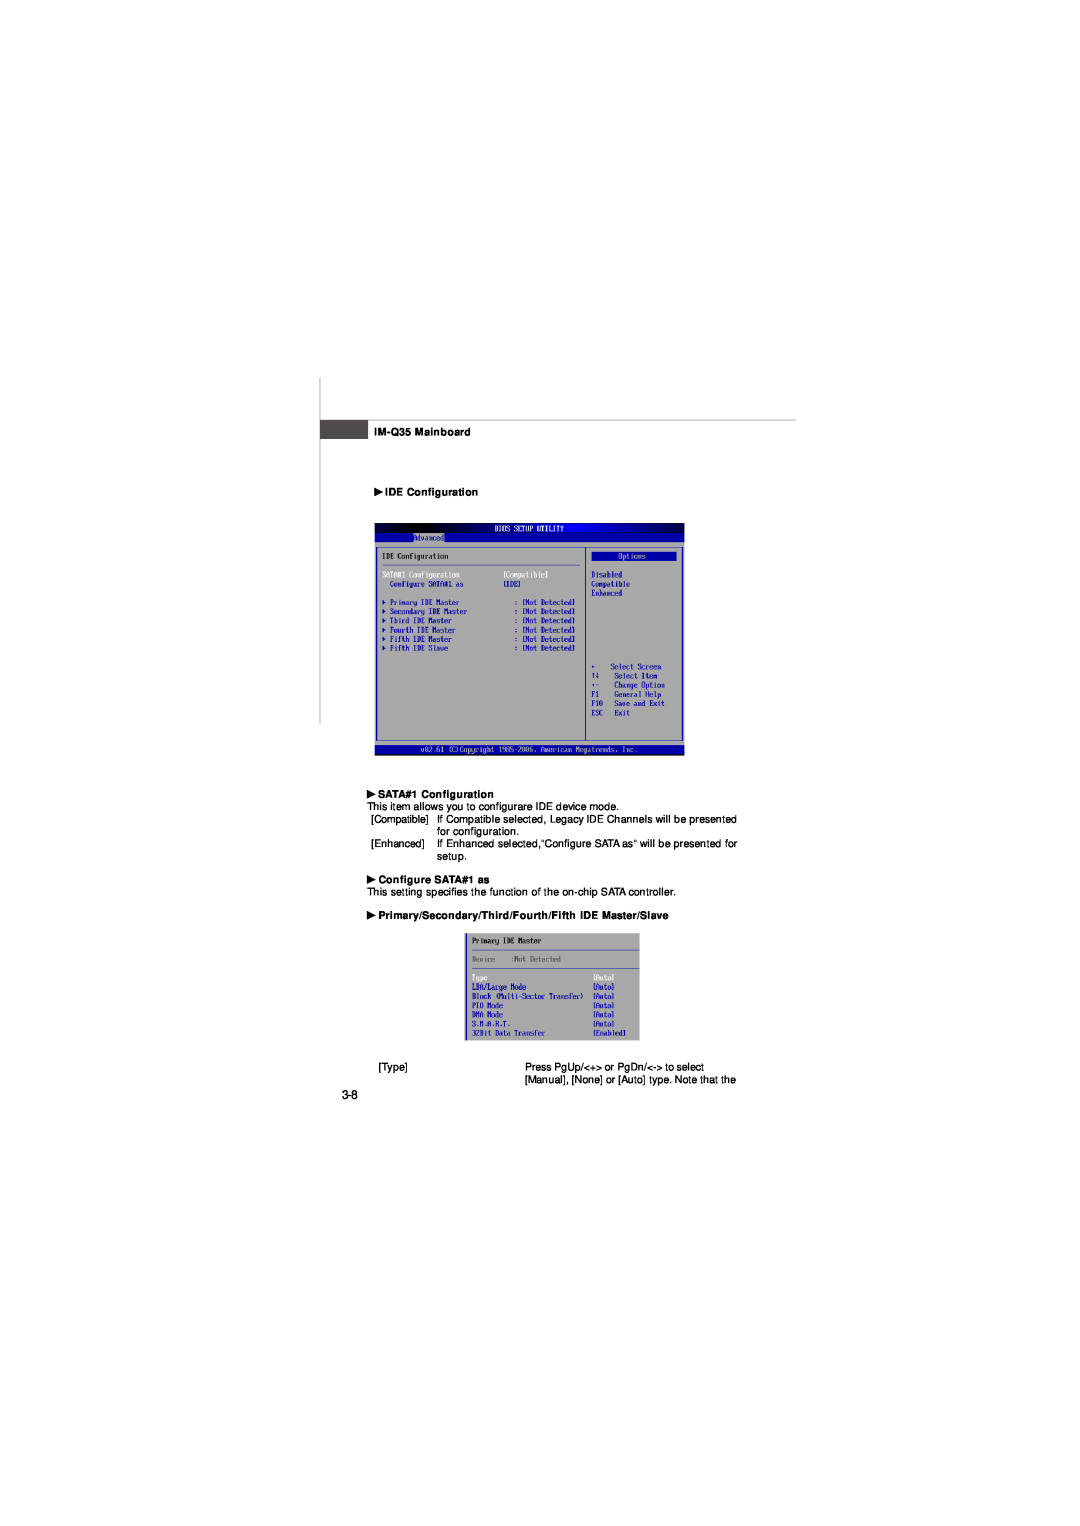 Intel IM-Q35 Series manual IM-Q35 Mainboard IDE Configuration SATA#1 Configuration, Configure SATA#1 as 